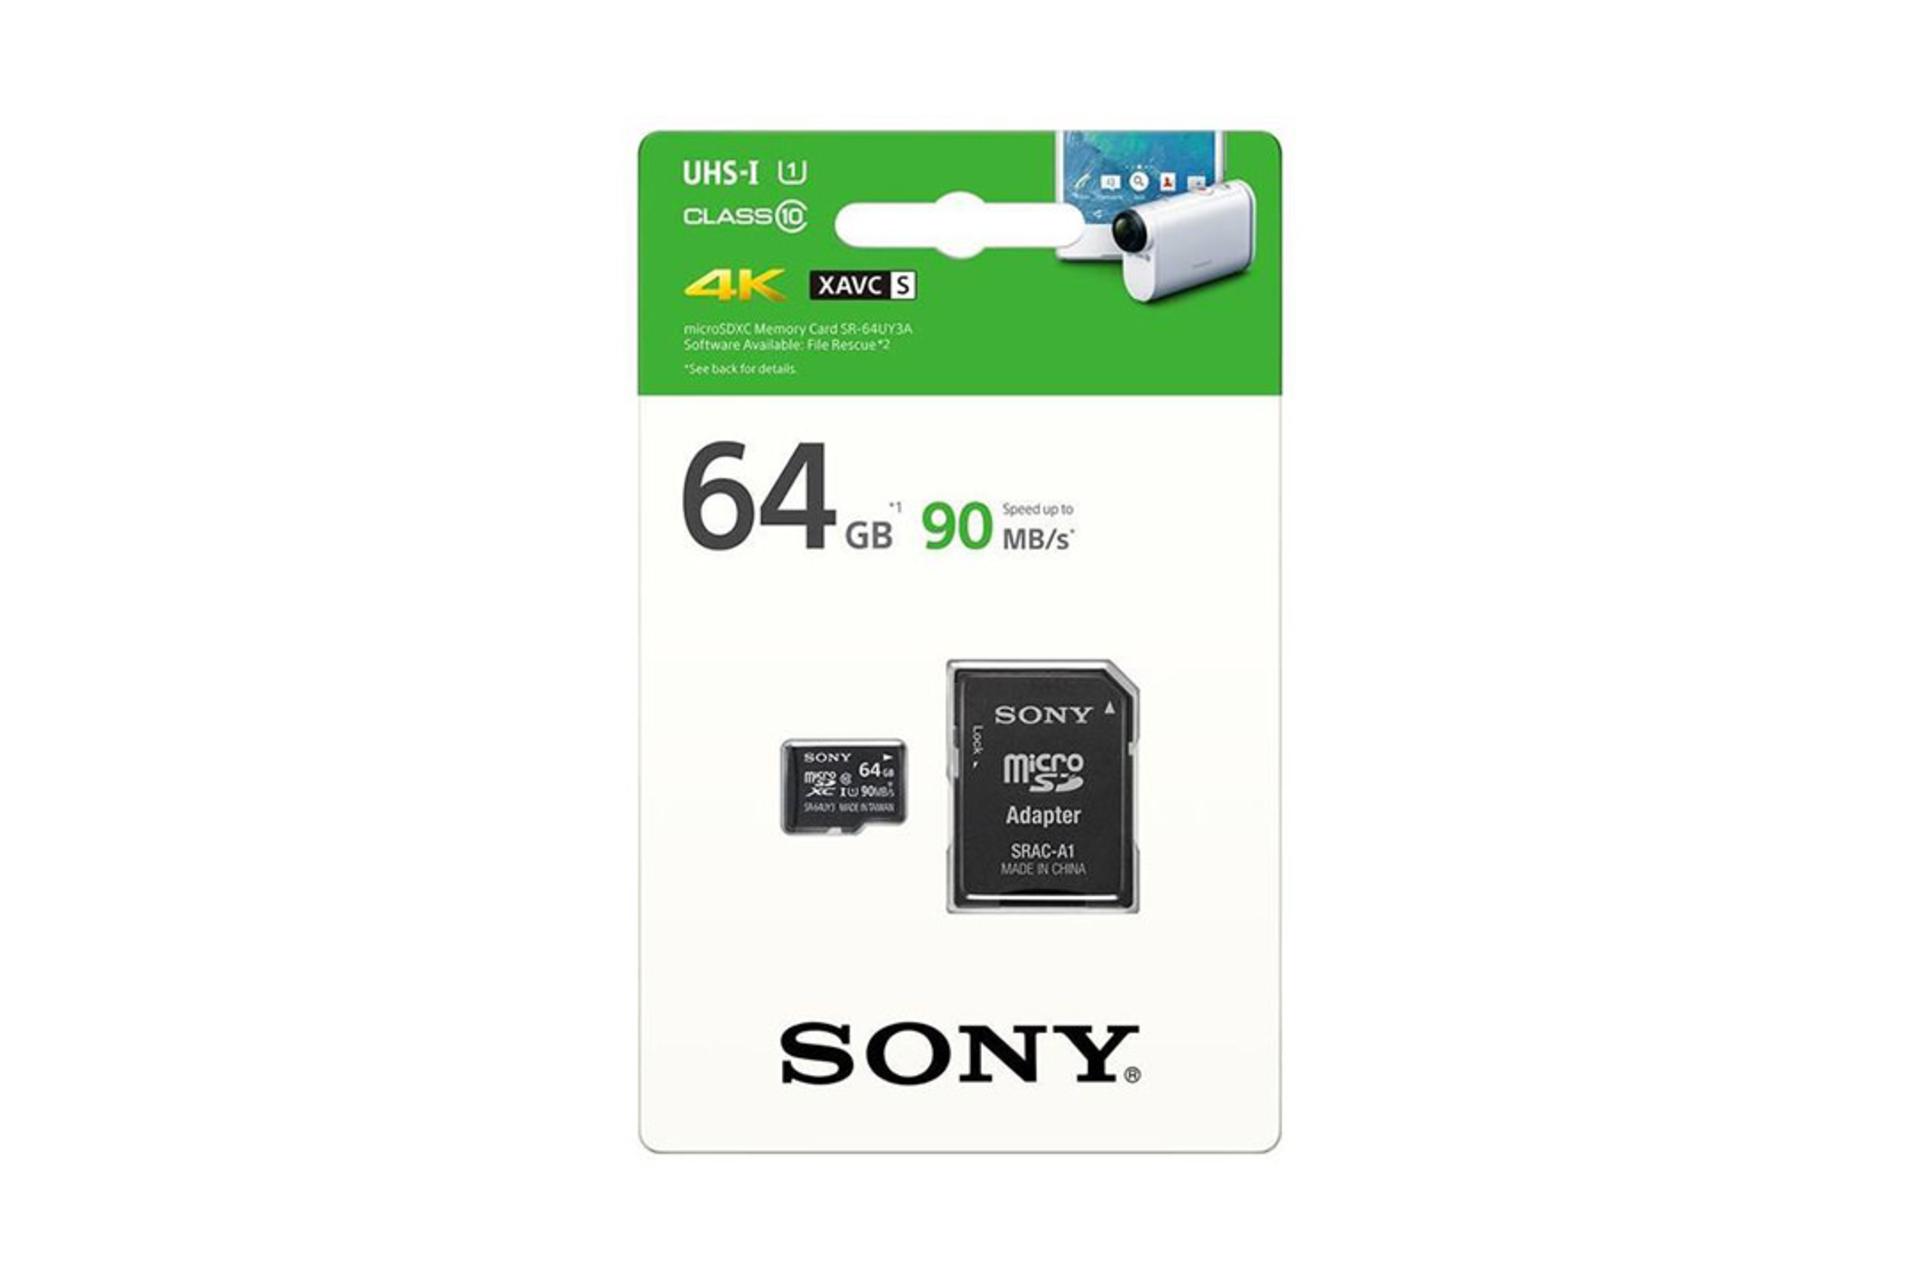 Sony SR-64UYA3 microSDXC Class 10 UHS-I U1 64GB